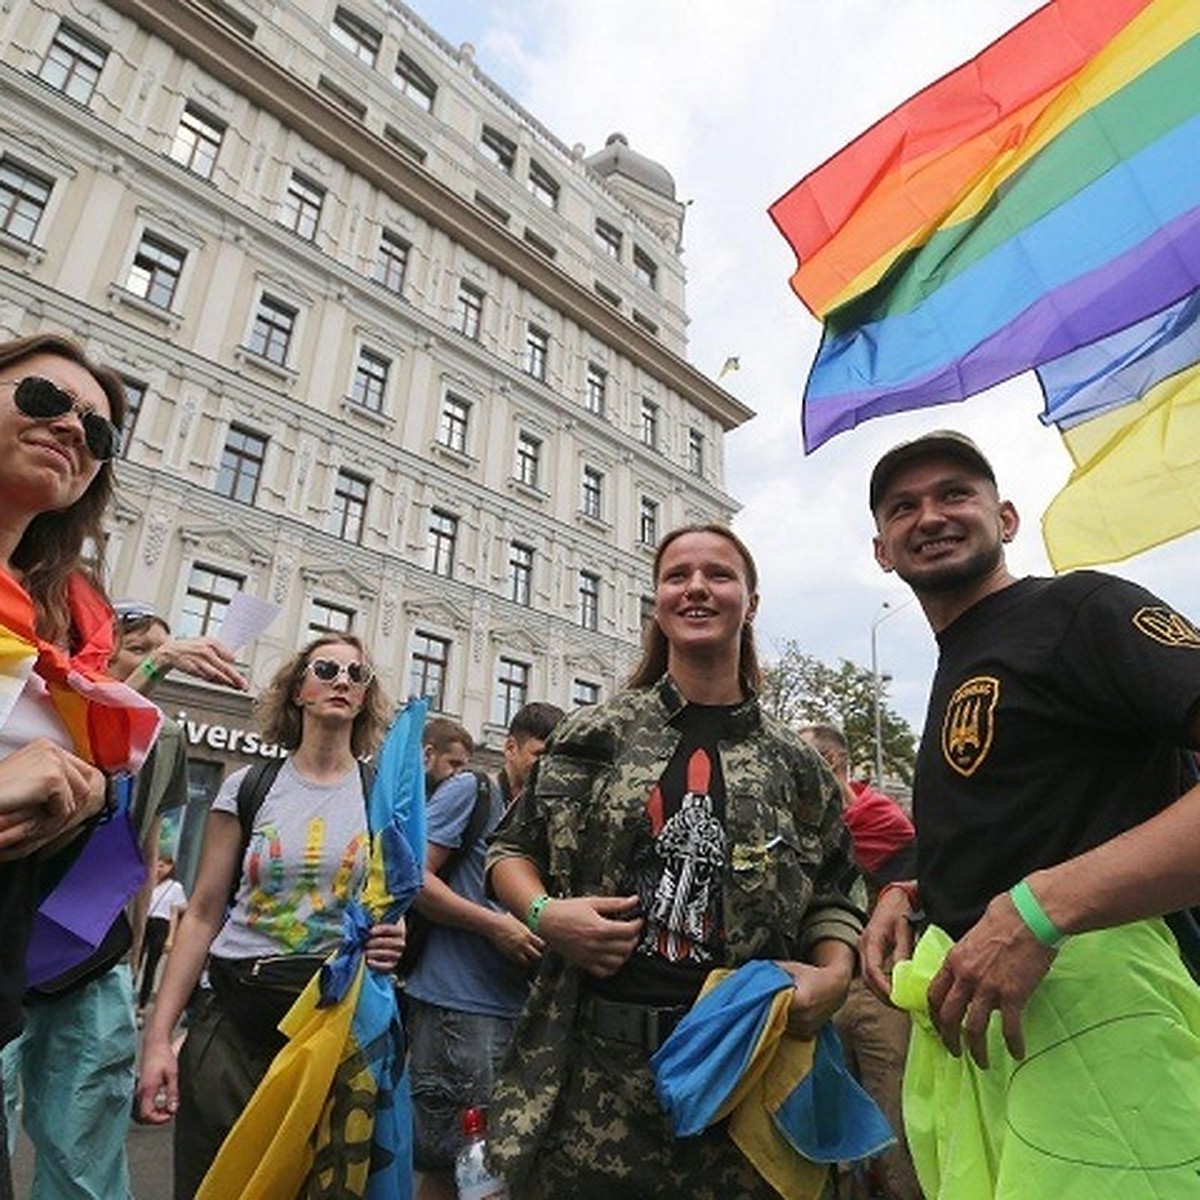 После прохождения атошников в гей-параде, представителей секс-меньшинств  пригласили на службу в украинскую армию - KP.RU